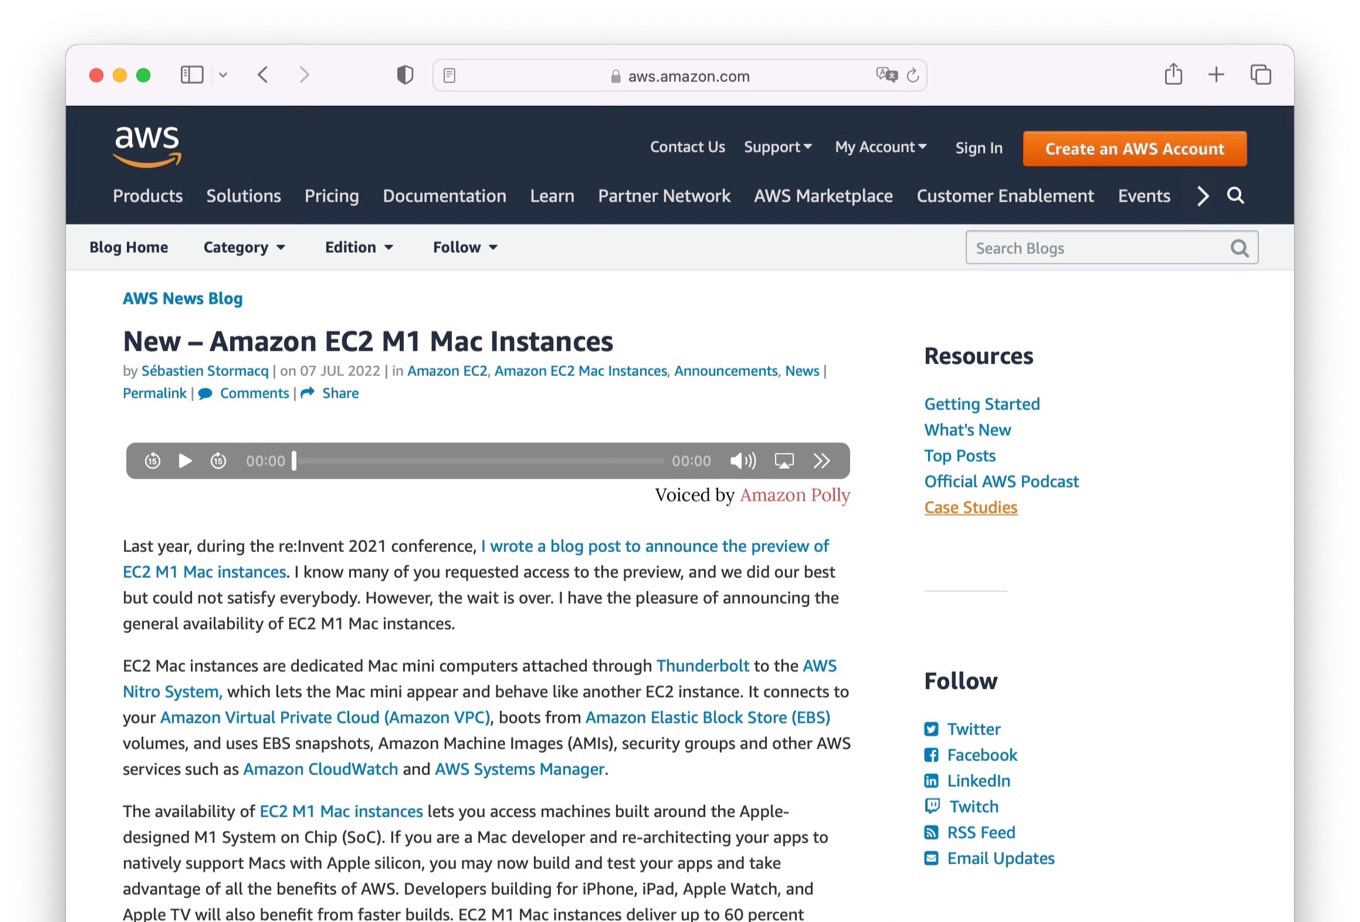 New Amazon EC2 M1 Mac Instances now available